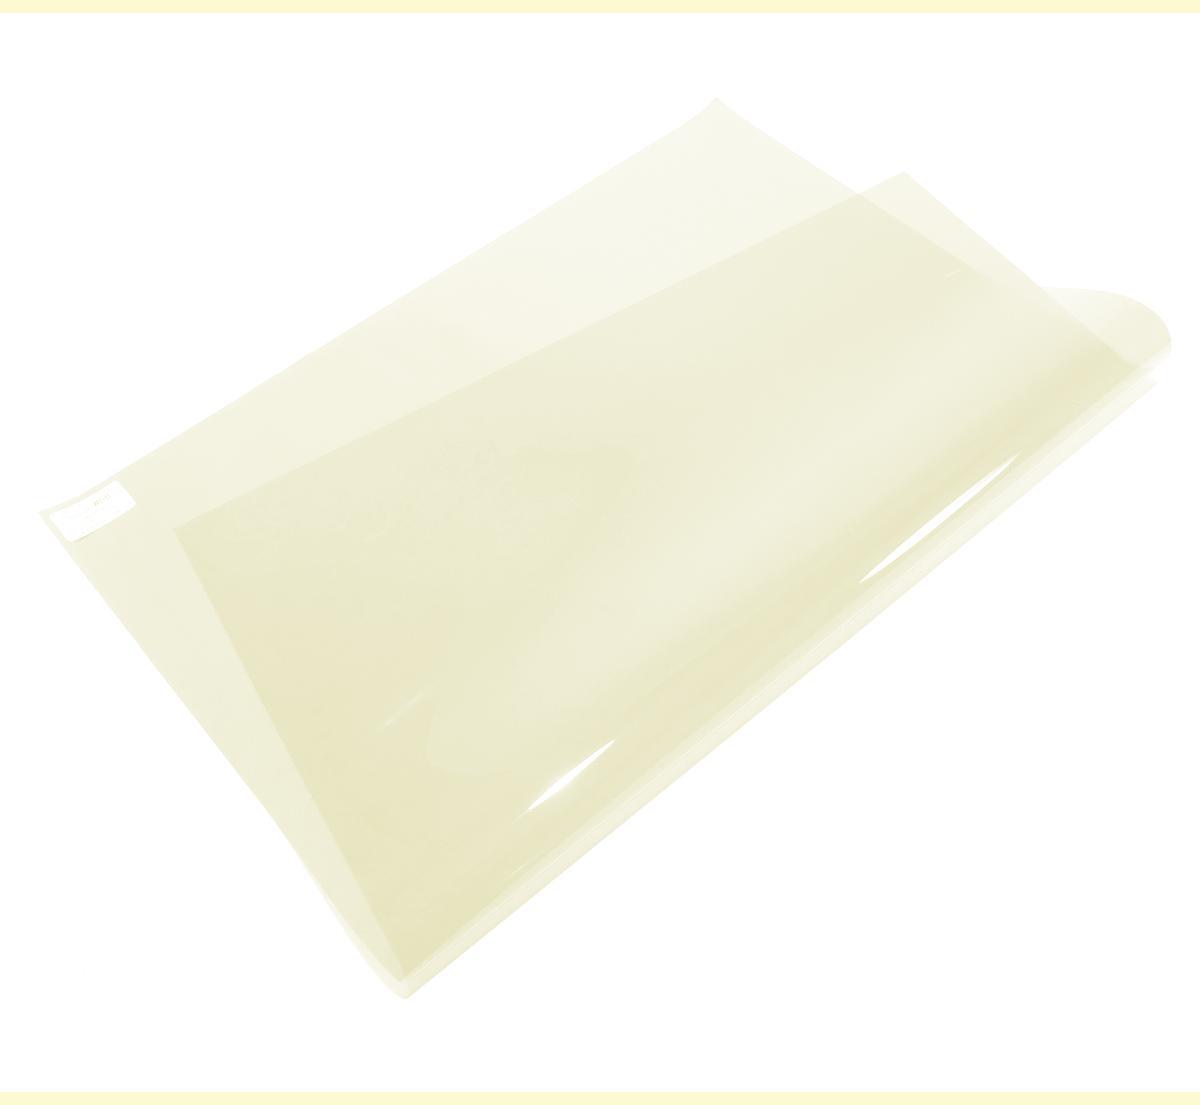 An image of #07 Pale Yellow Lighting Gel Sheet